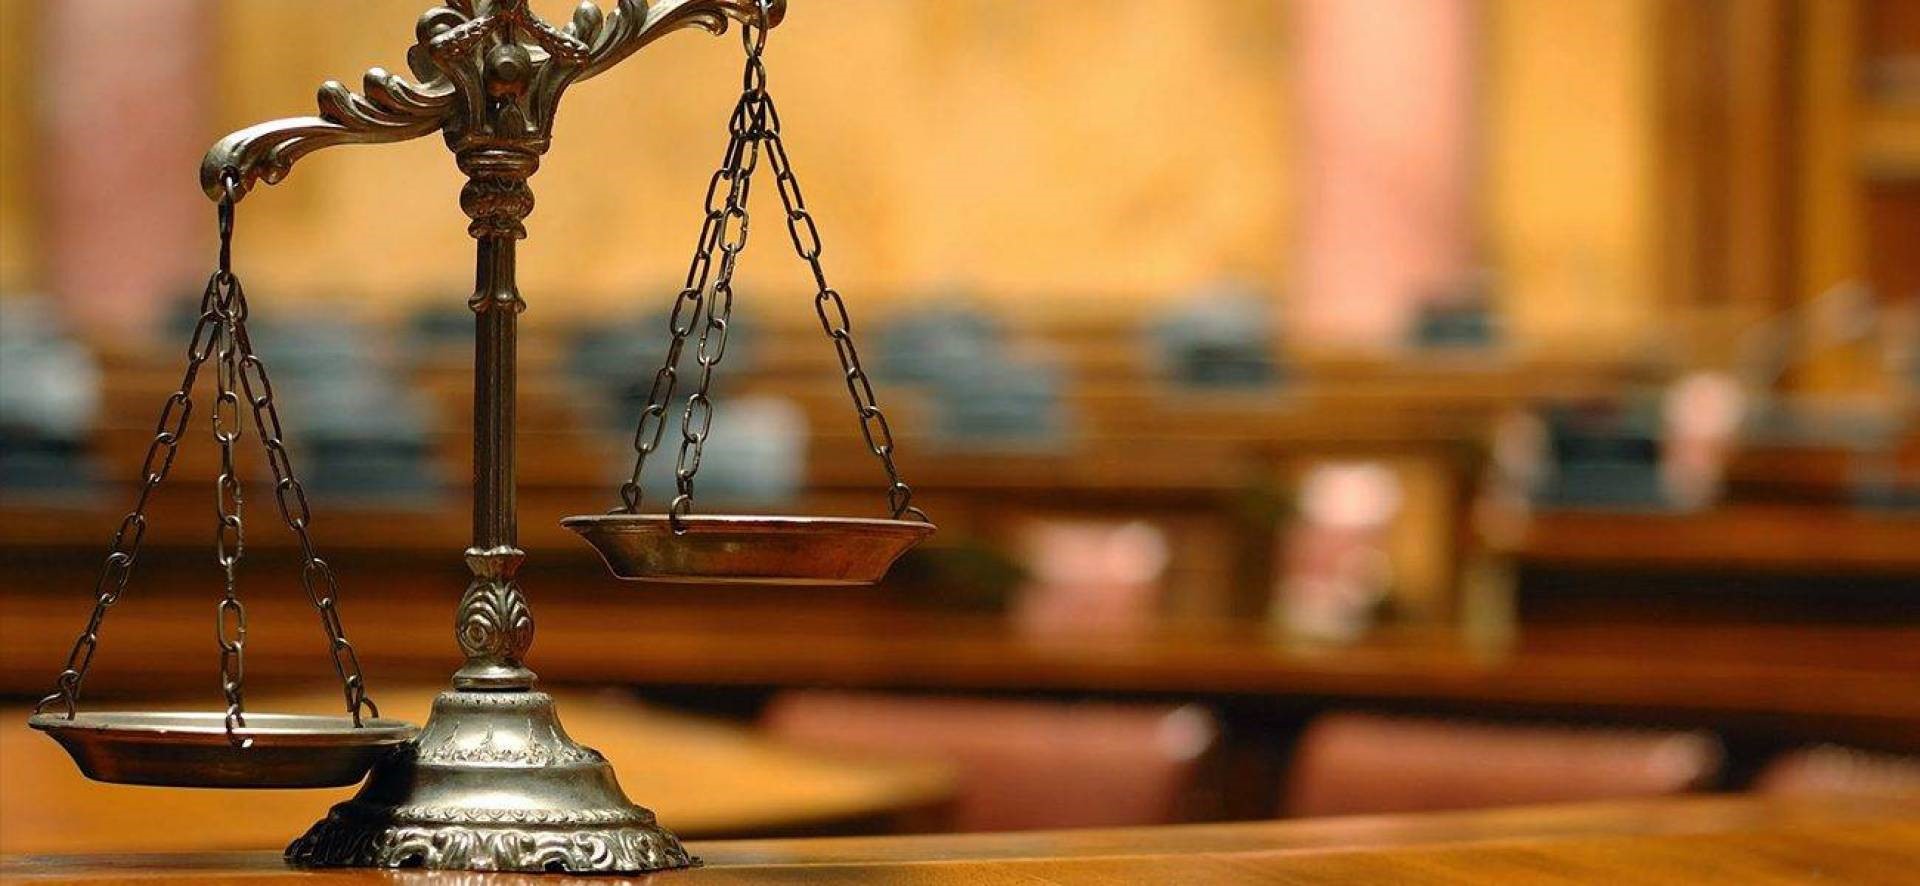 وکلا موظف به ثبت قراردادهای مالی در سامانه قوه قضائیه